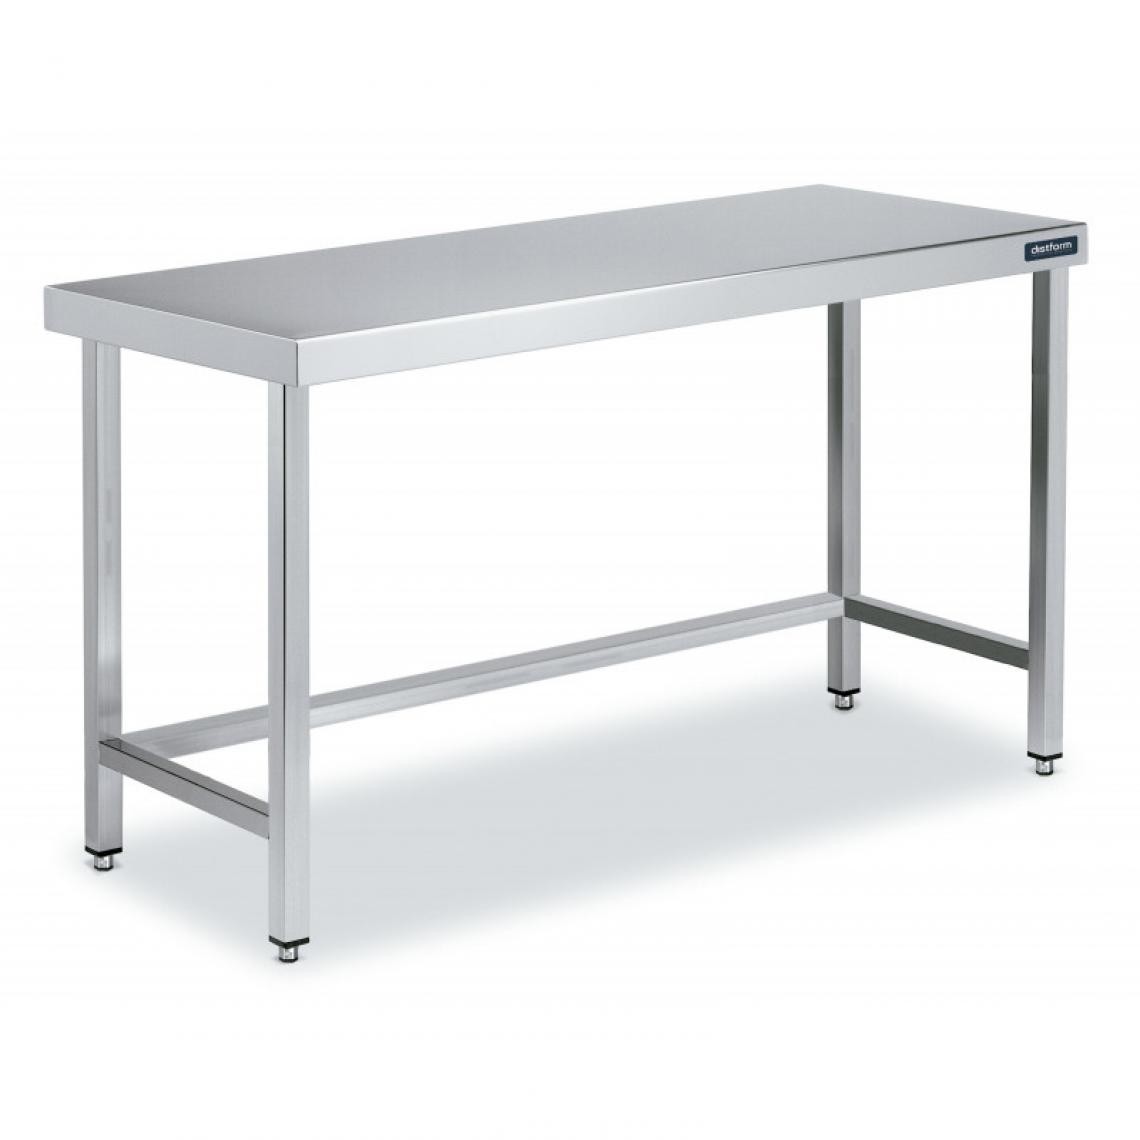 DISTFORM - Table Centrale en Inox avec renforts Profondeur 600mm - Distform - Acier inoxydable1500x600 - Tables à manger